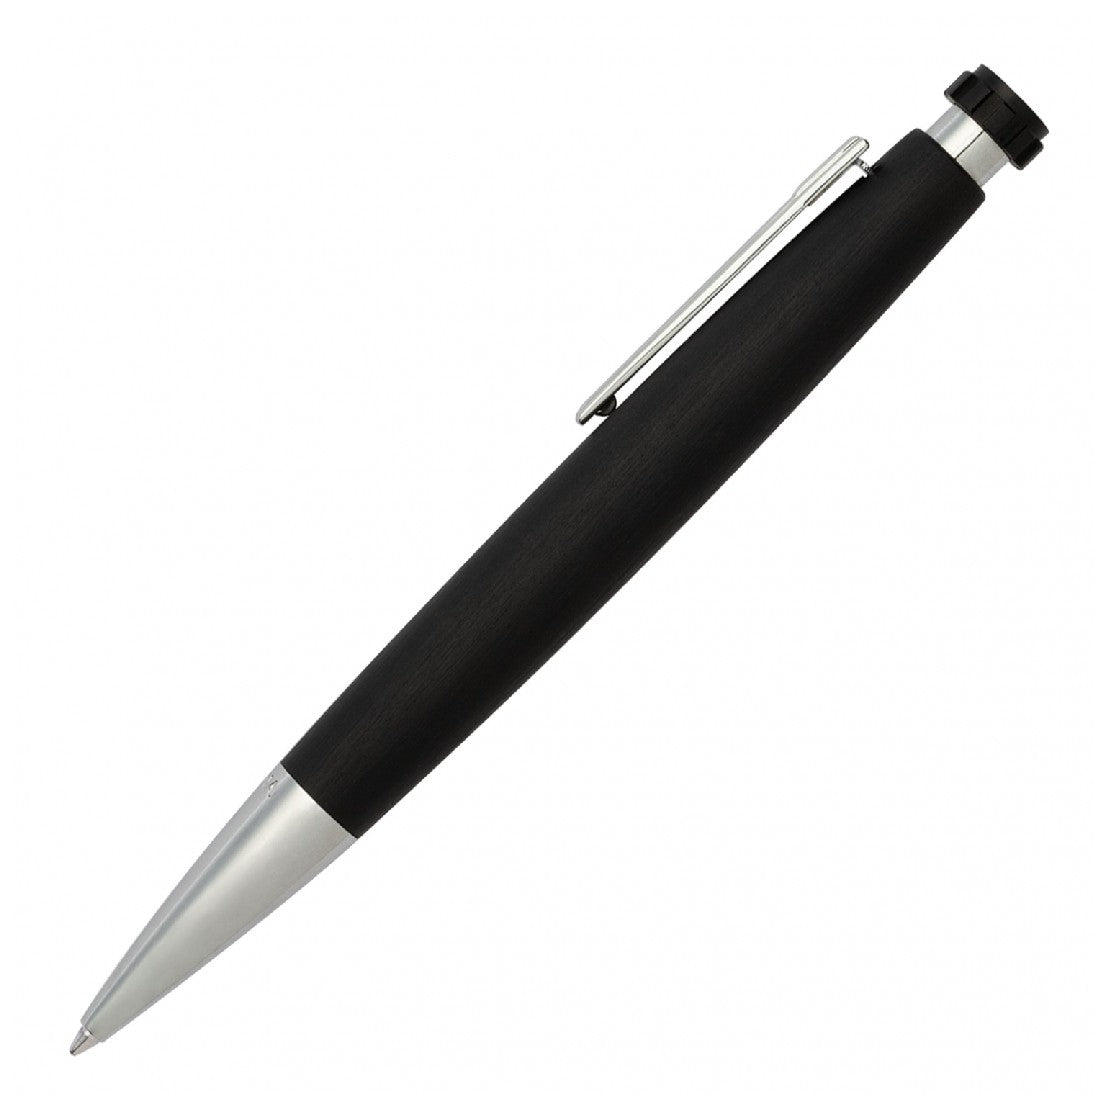 Festina Black and Chrome Pen - FSPEN-0001